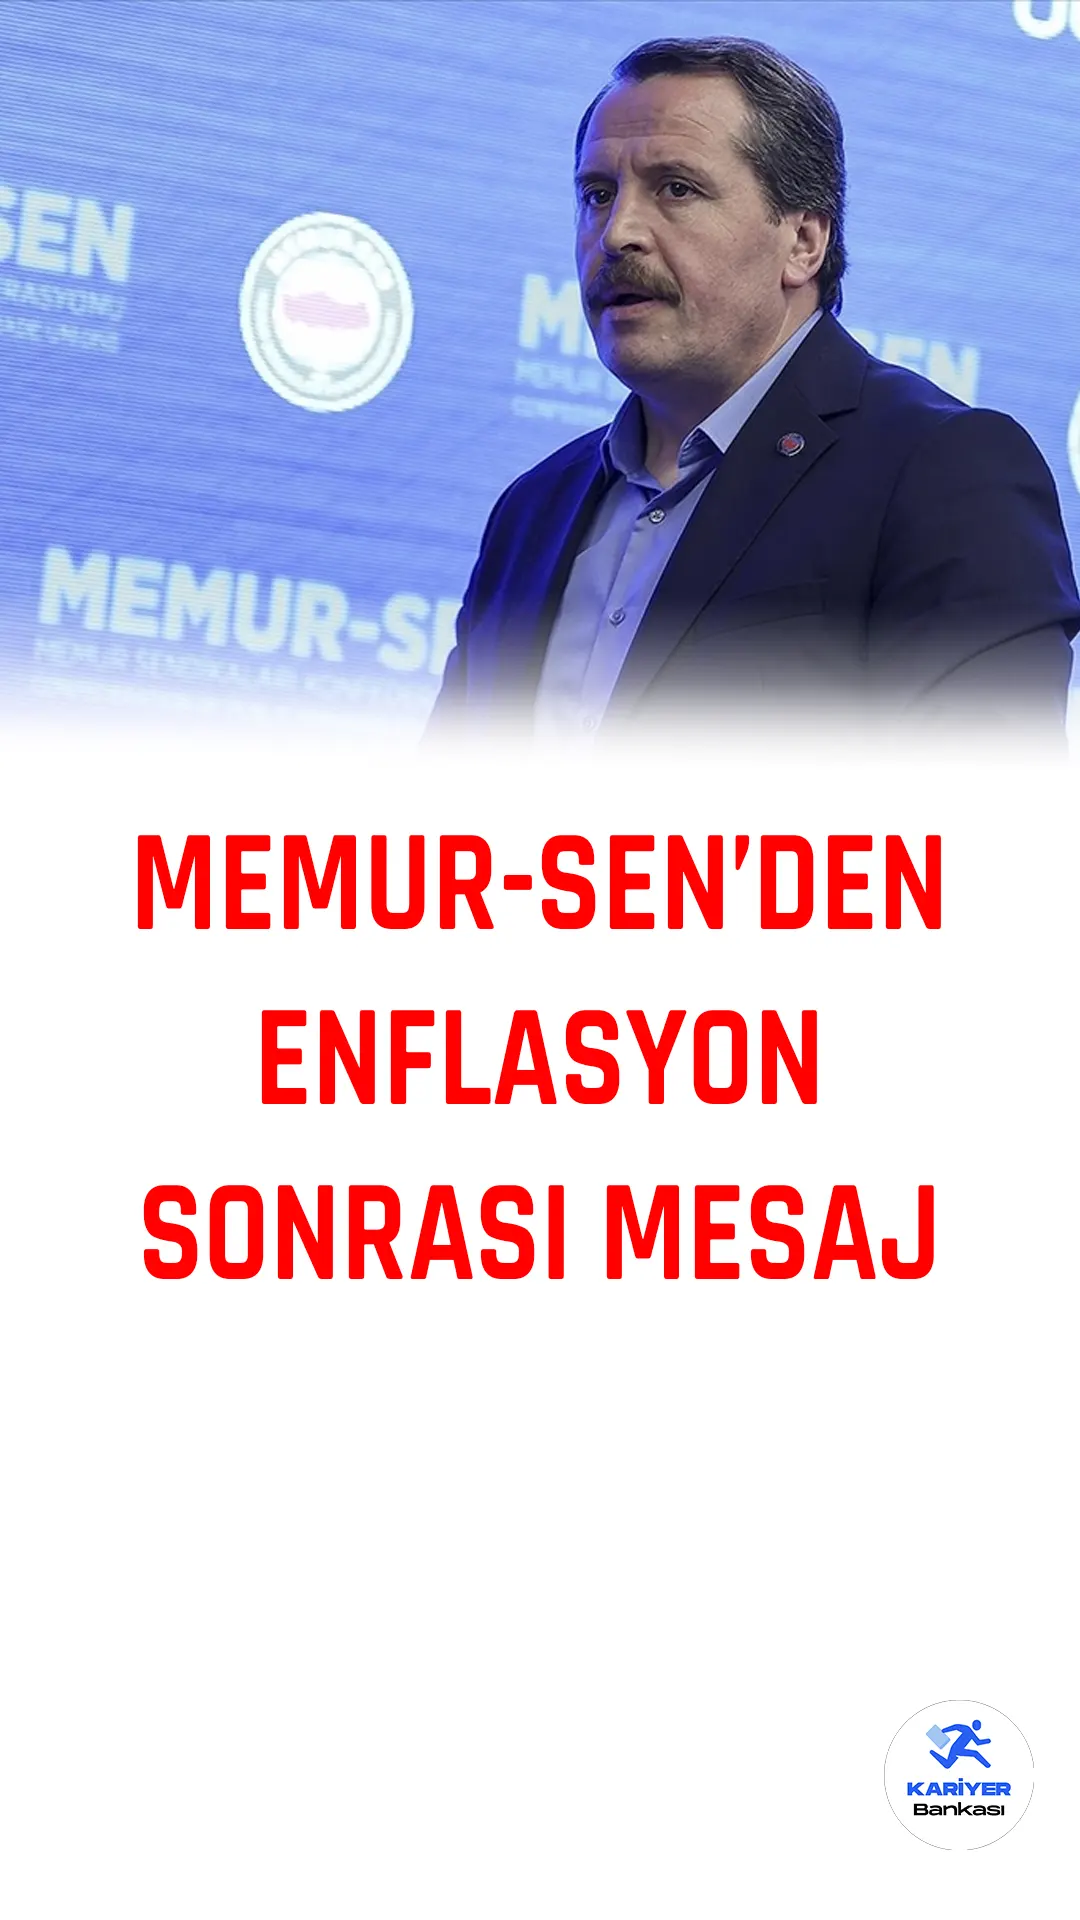 Memur-Sen Genel Başkanı Ali Yalçın, TÜİK'in enflasyon verilerini açıklamasının ardından yayımladığı mesajda Türkiye'nin 2023 hedeflerini ve fiyat istikrarını gerçekleştirecek güce sahip olduğunu belirtti.